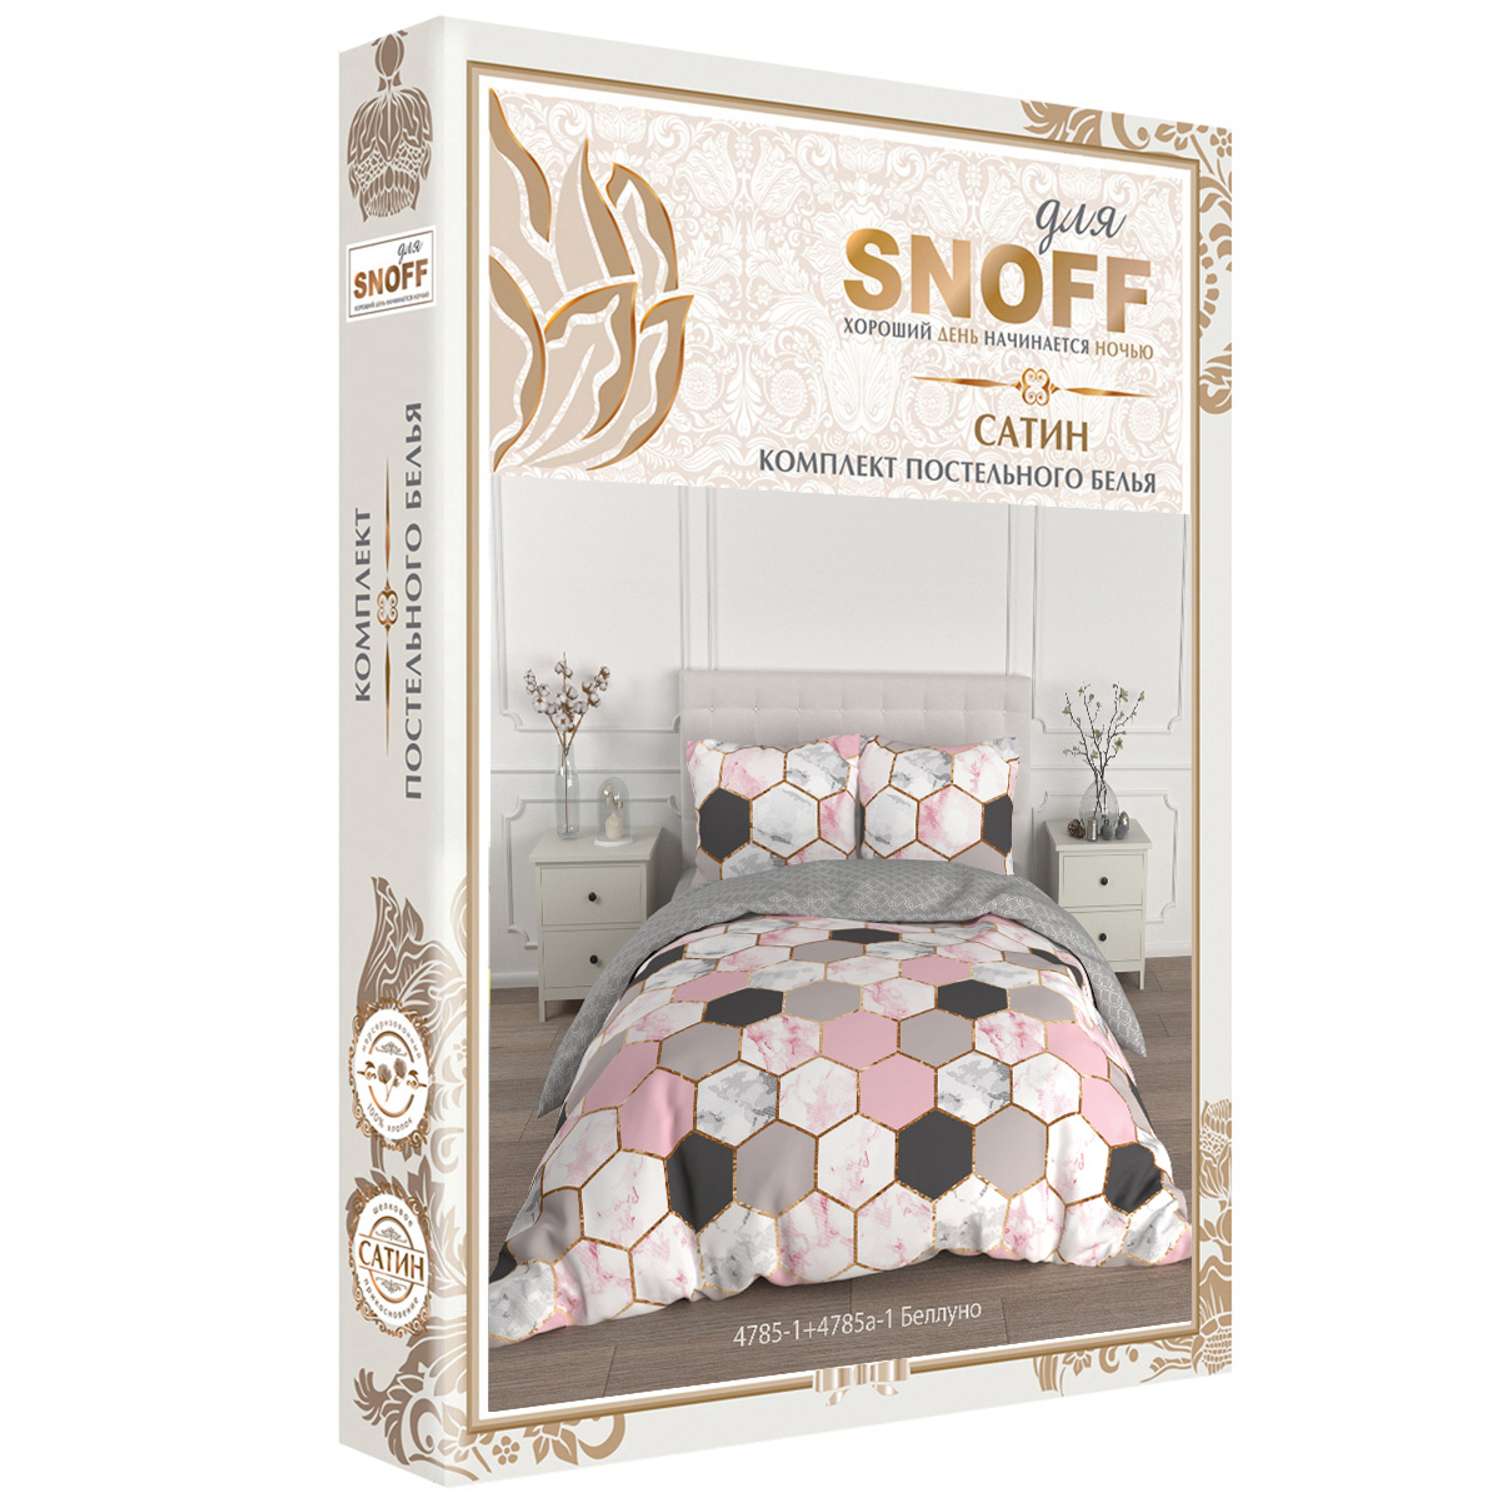 Комплект постельного белья для SNOFF Беллуно 2-спальный макси сатин - фото 4